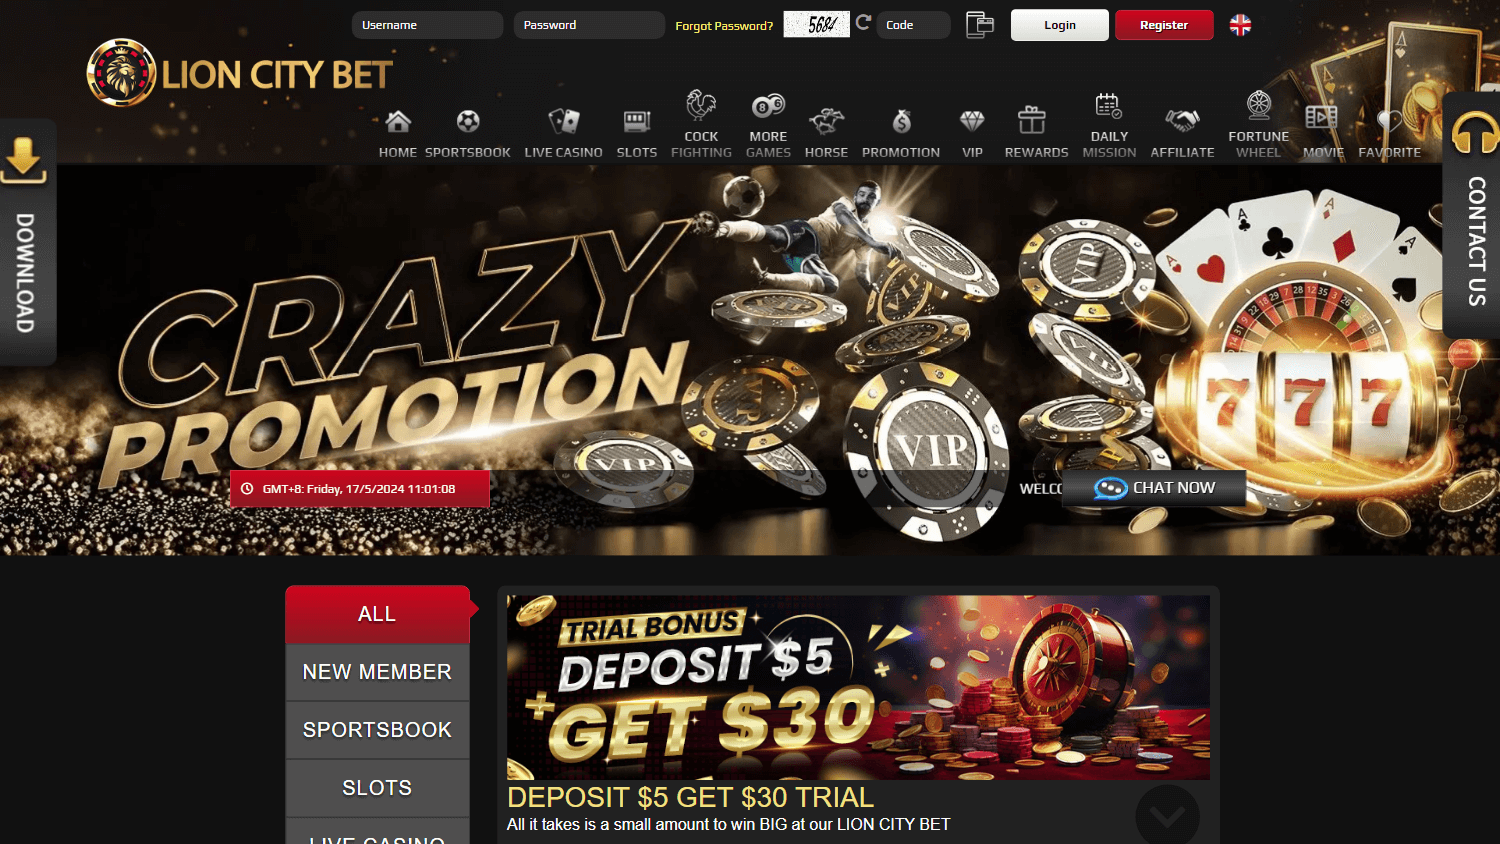 lion_city_bet_casino_promotions_desktop